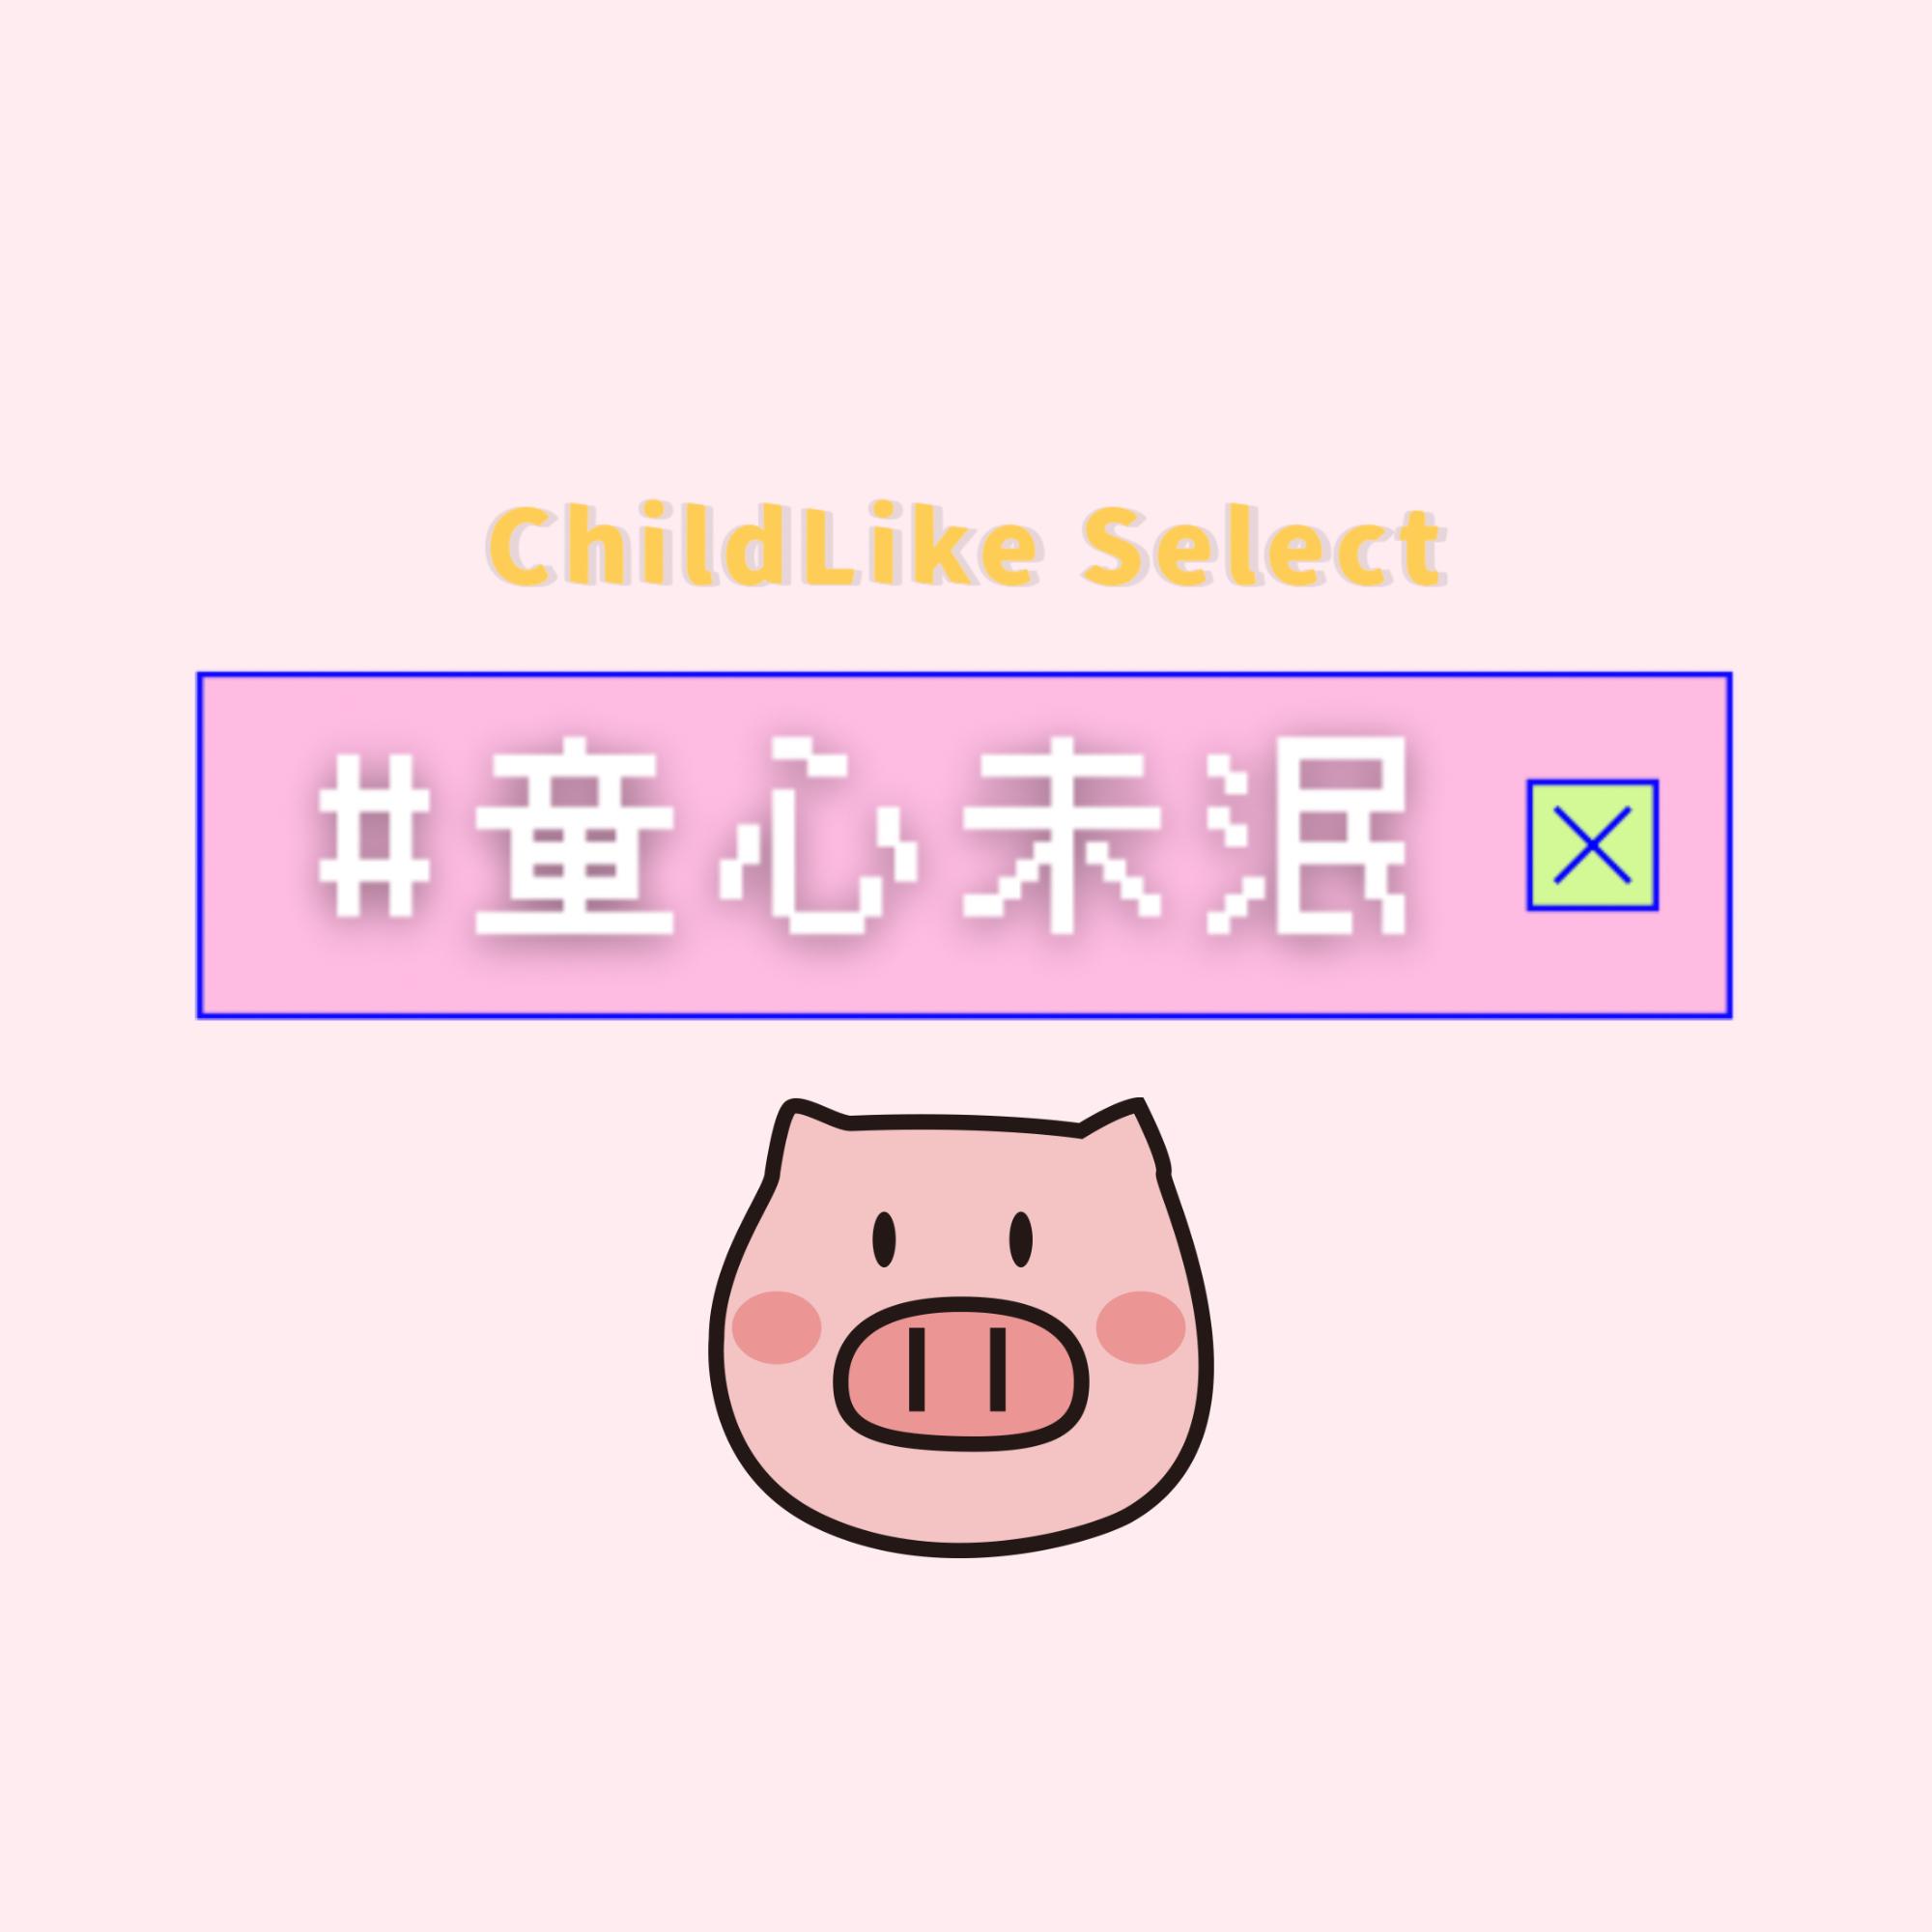 童心未泯 ChildLike Select